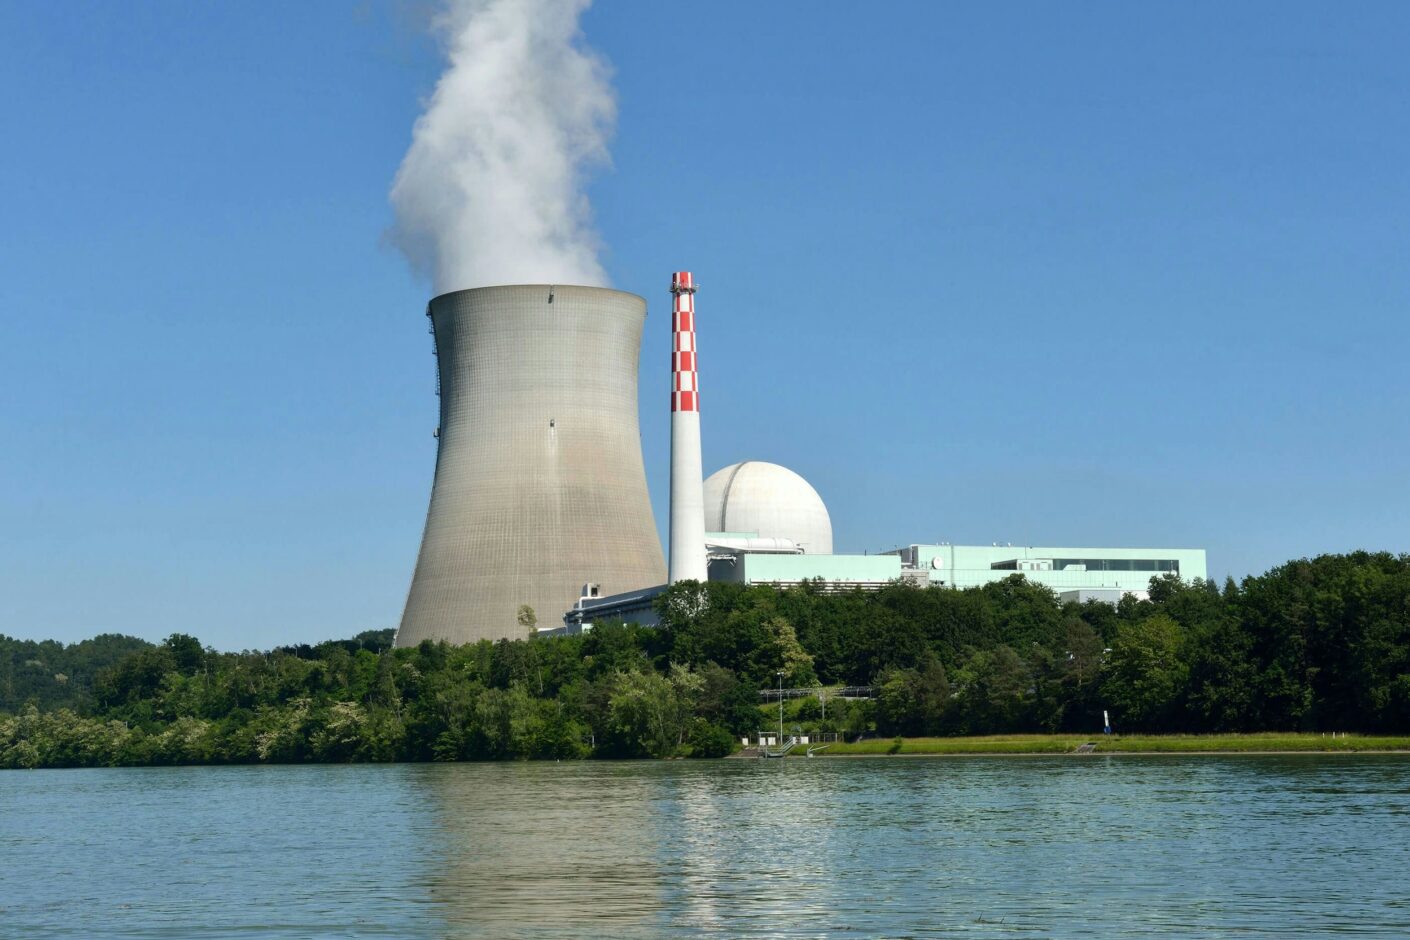 KKL Kernkraftwerk, Leibstadt.